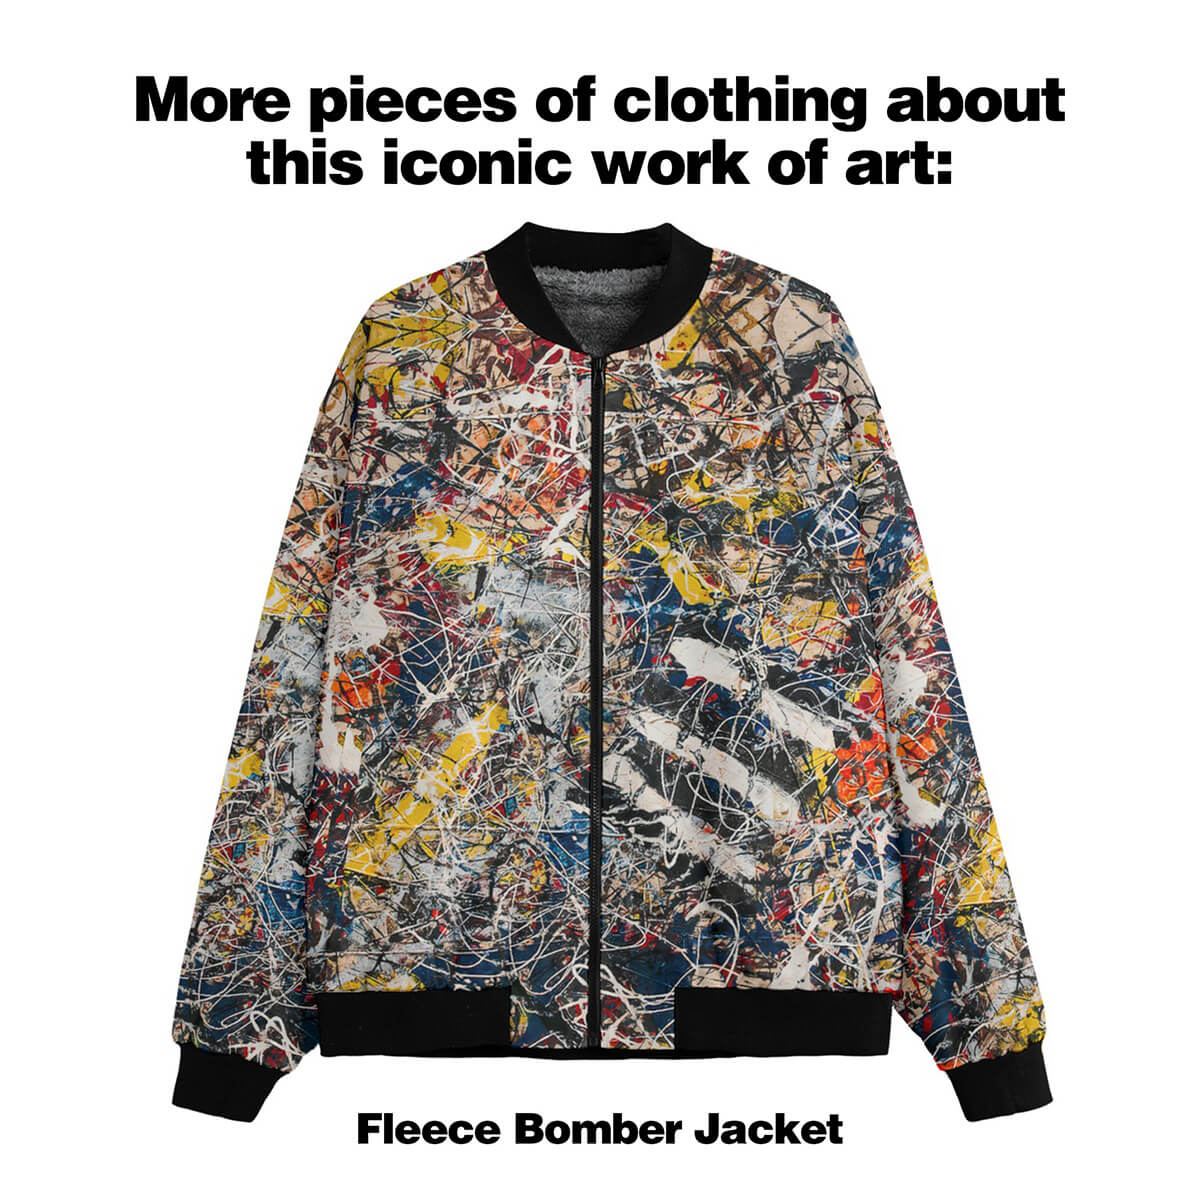 Hedvábný košilový oblek číslo 17A od Jacksona Pollocka